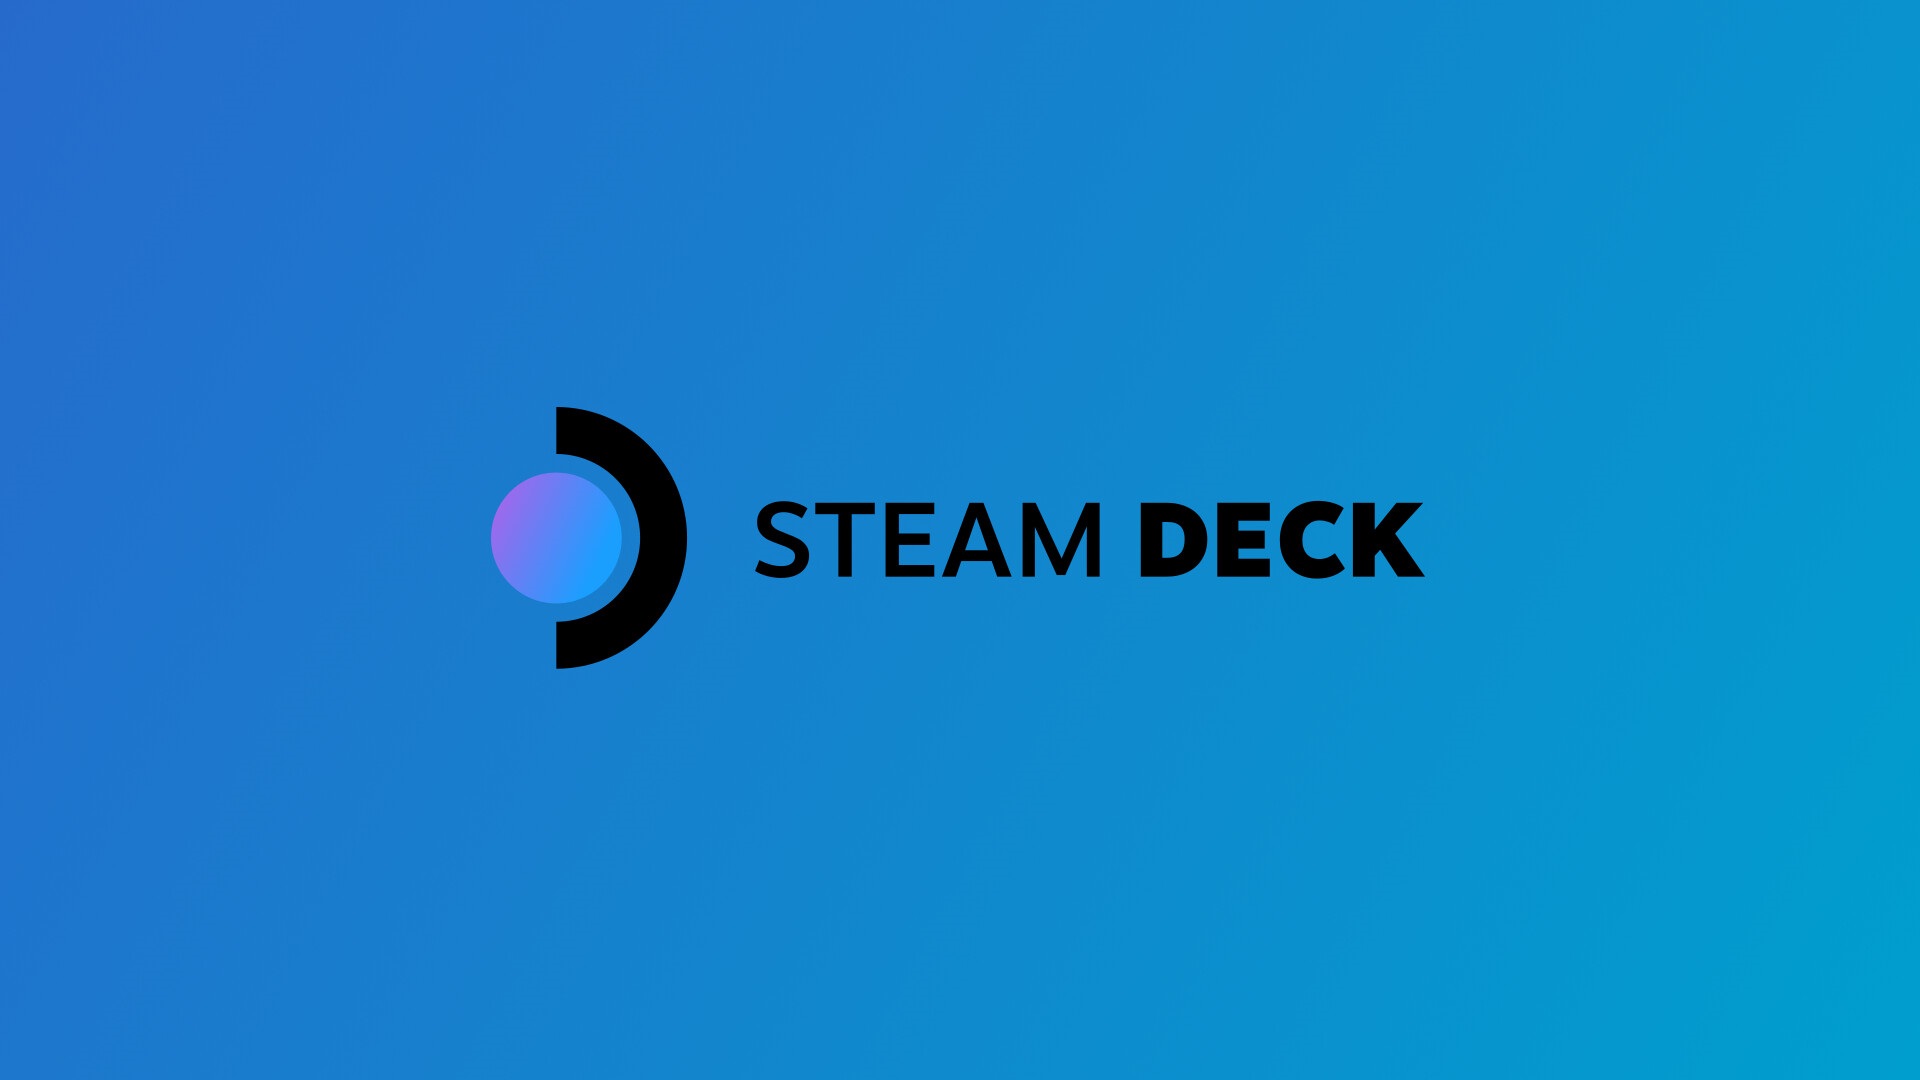 راهنمای کامل Steam Deck: مشخصات، هزینه و هر چیزی که باید درباره آن بدانید